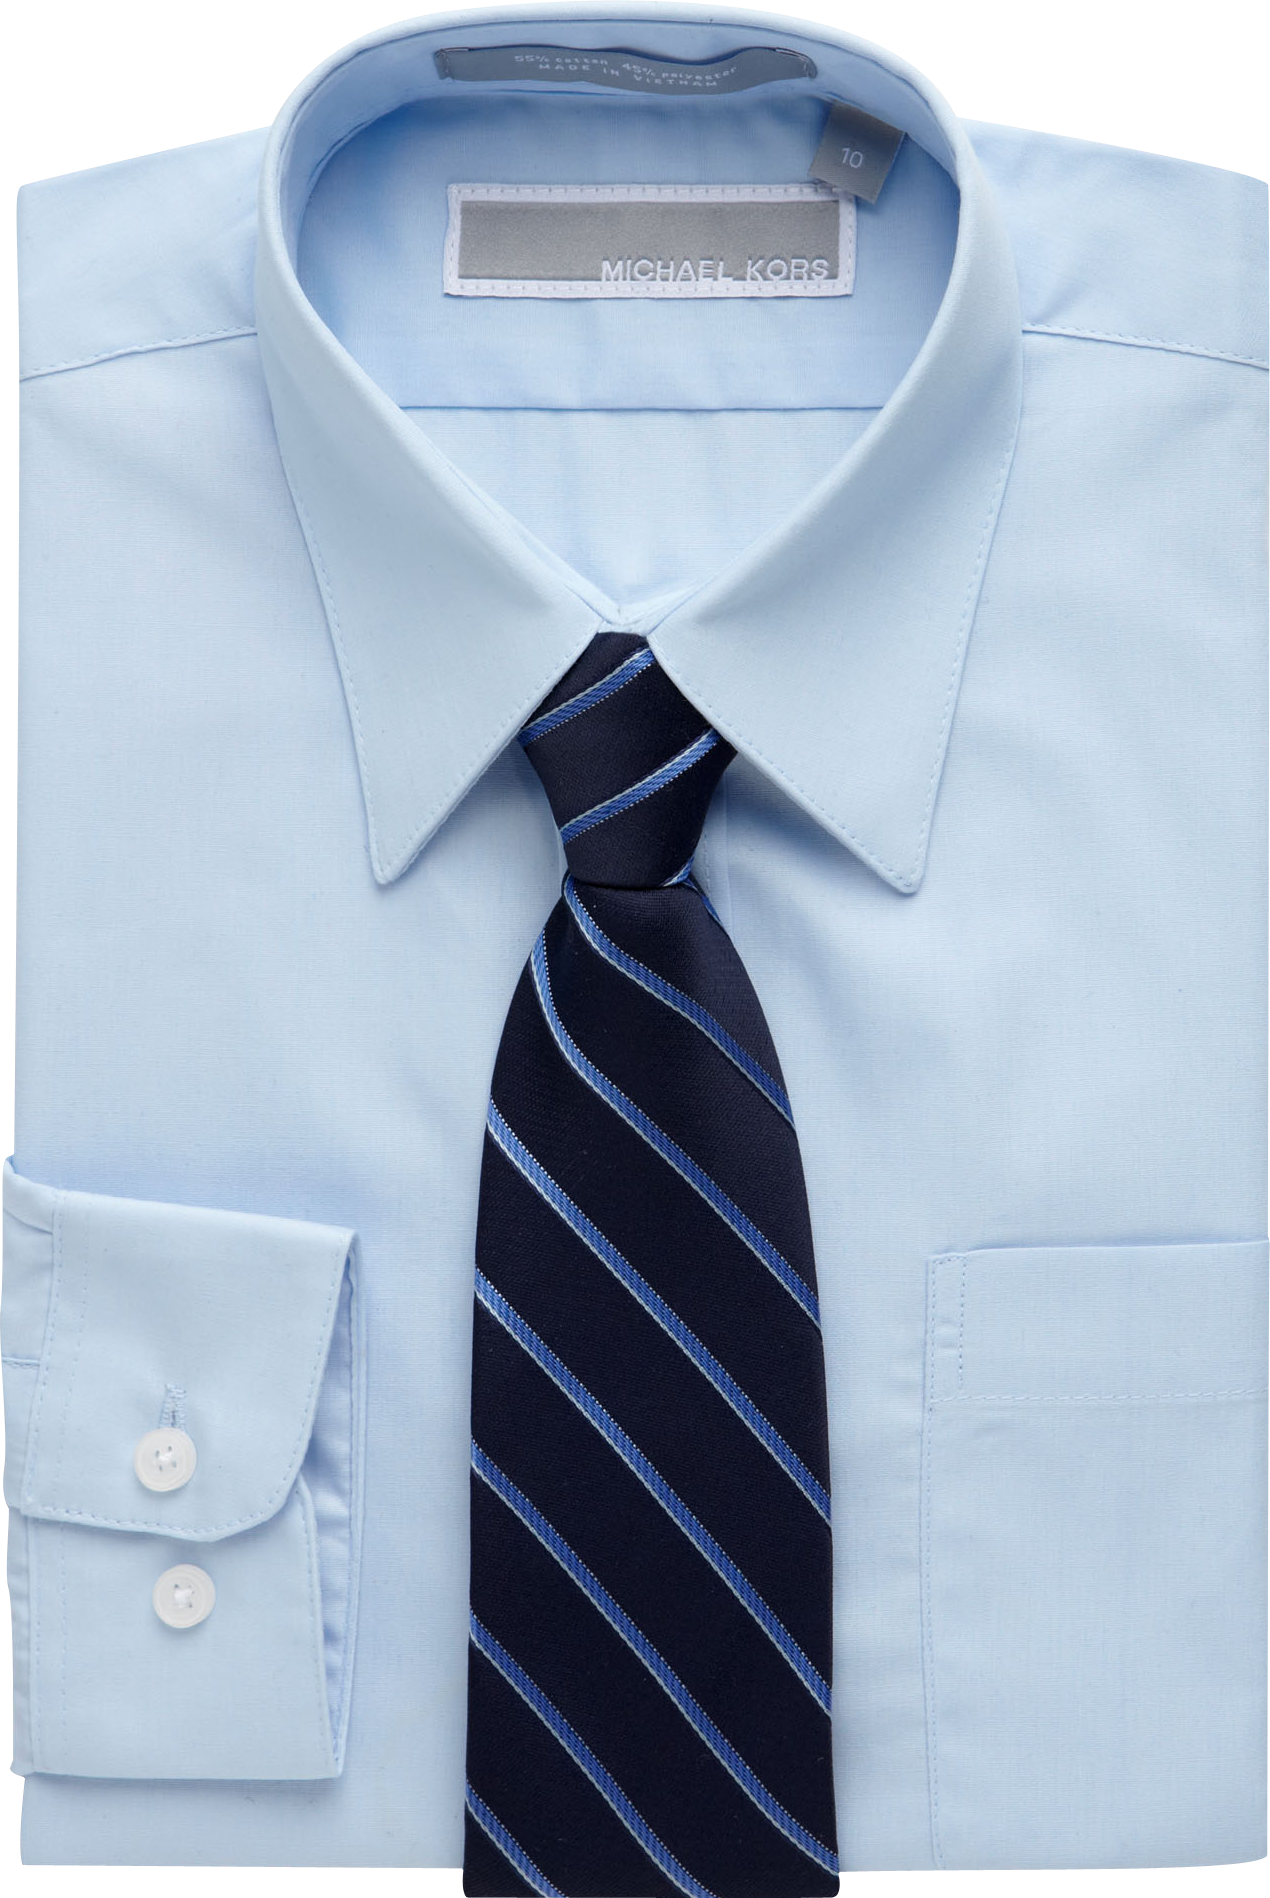 michael kors shirt and tie set